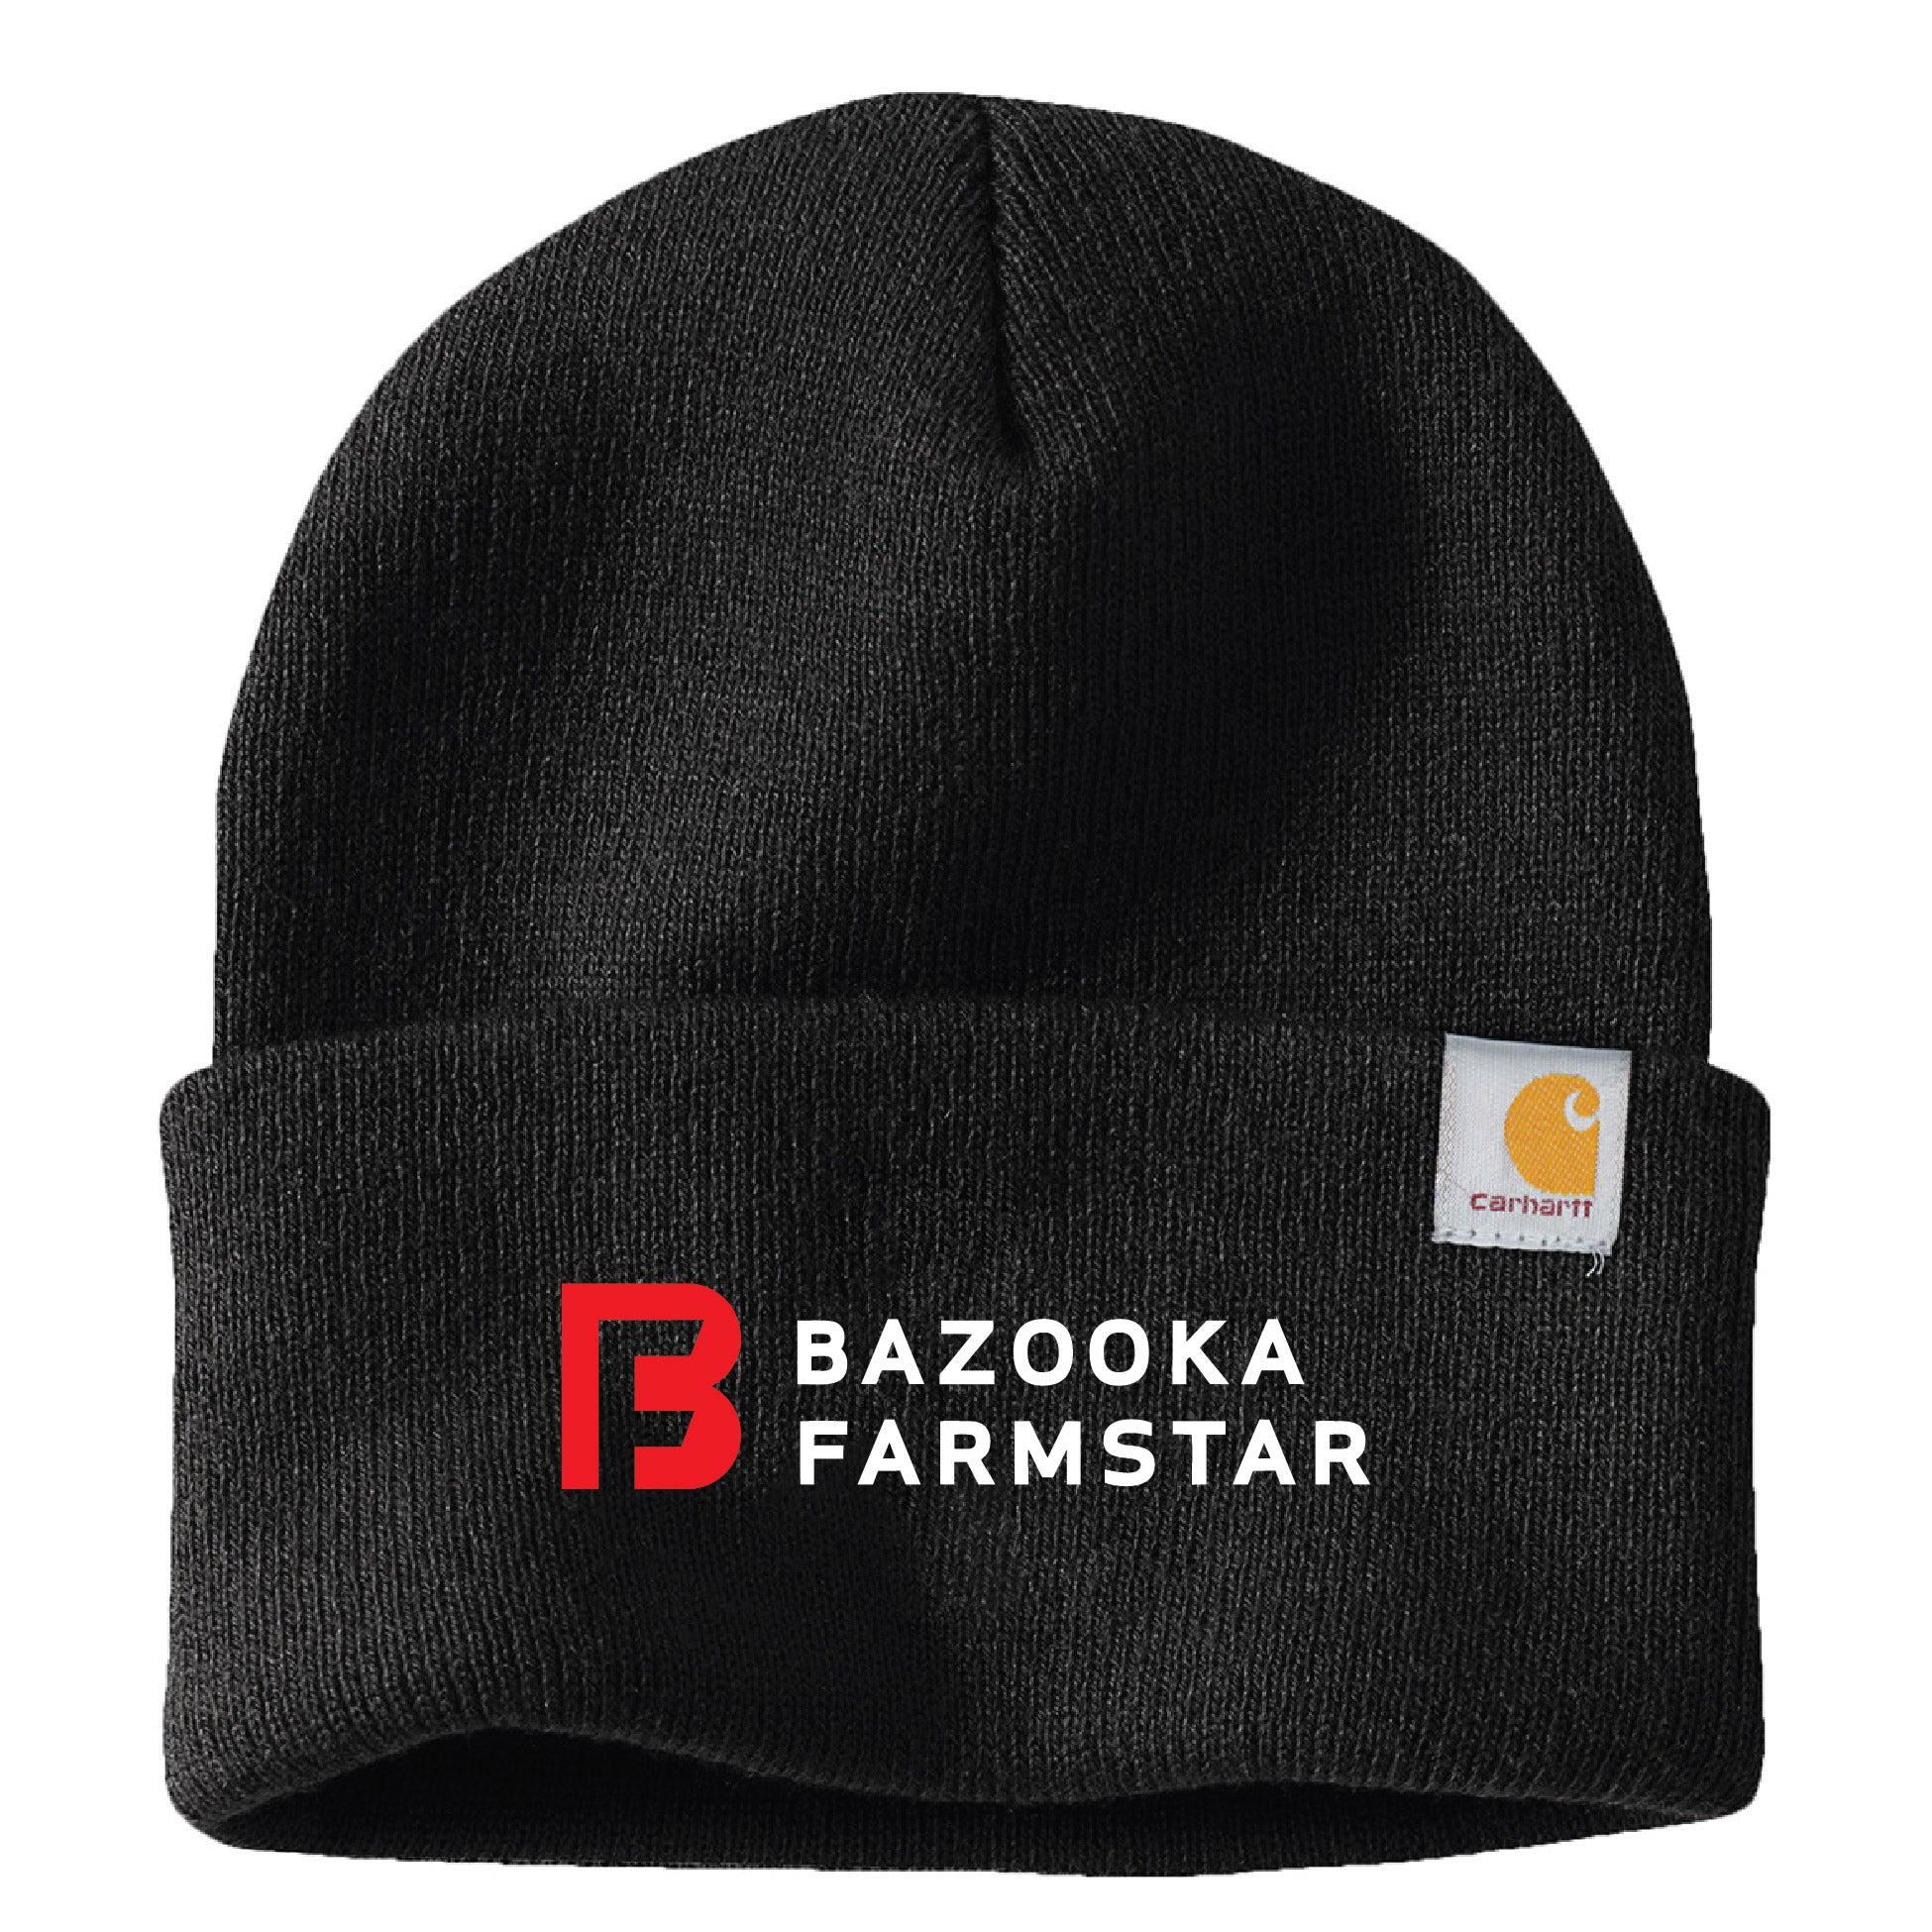 Bazooka Farmstar Carhartt Cap